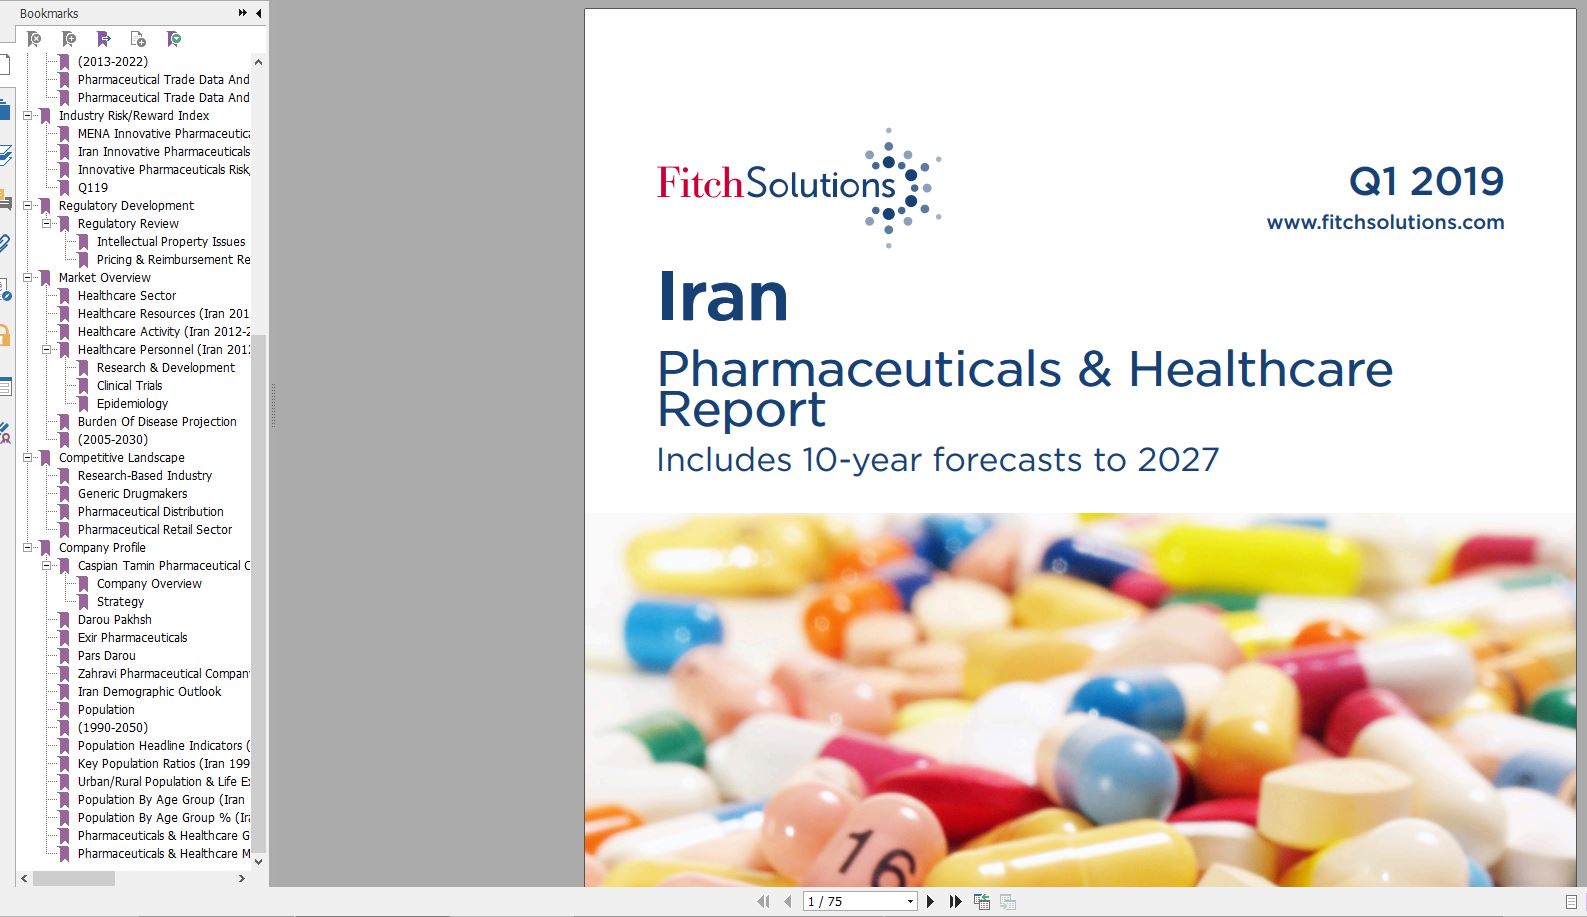 خرید گزارش Iran Pharmaceuticals and Healthcare Report Q1 2019.pdf - جدیدترین نسخه گزارش صنعت داروسازي و بهداشت در ايران سال ٢٠١٩ گیگاپیپر